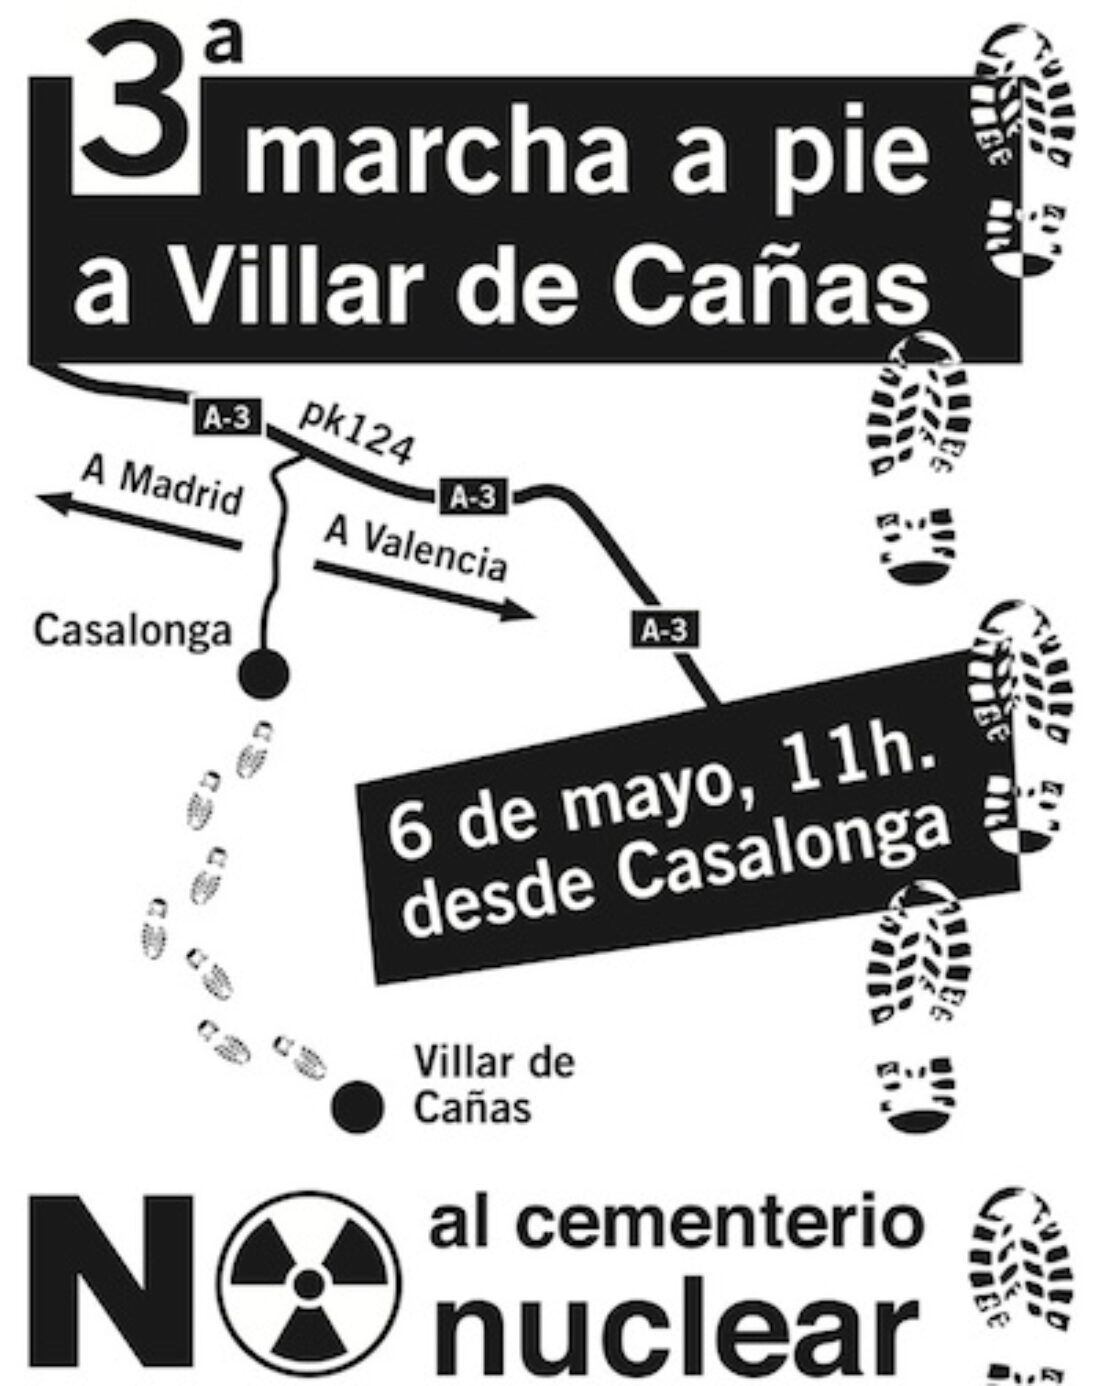 3ª marcha a pie a Villar de Cañas contra el cementerio nuclear